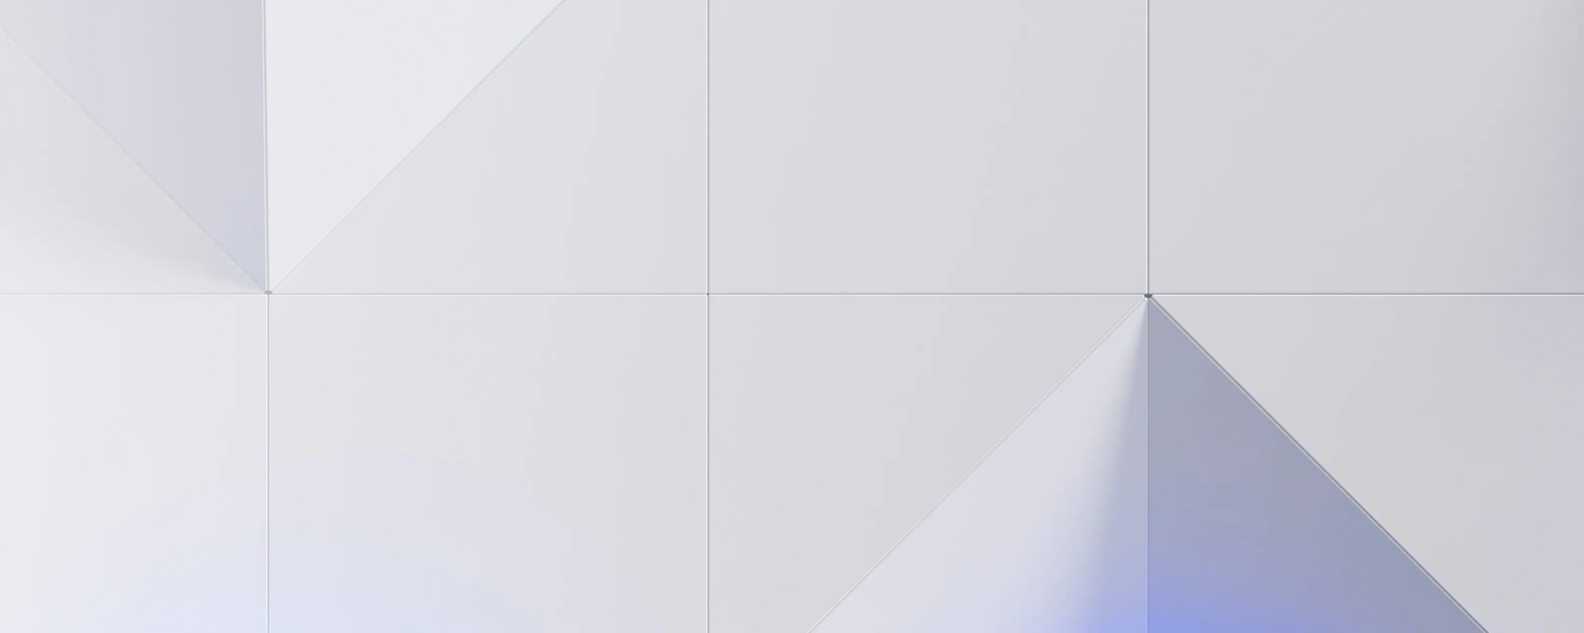 Ilustração geométrica abstrata que retrata o gradiente chevron da IBM